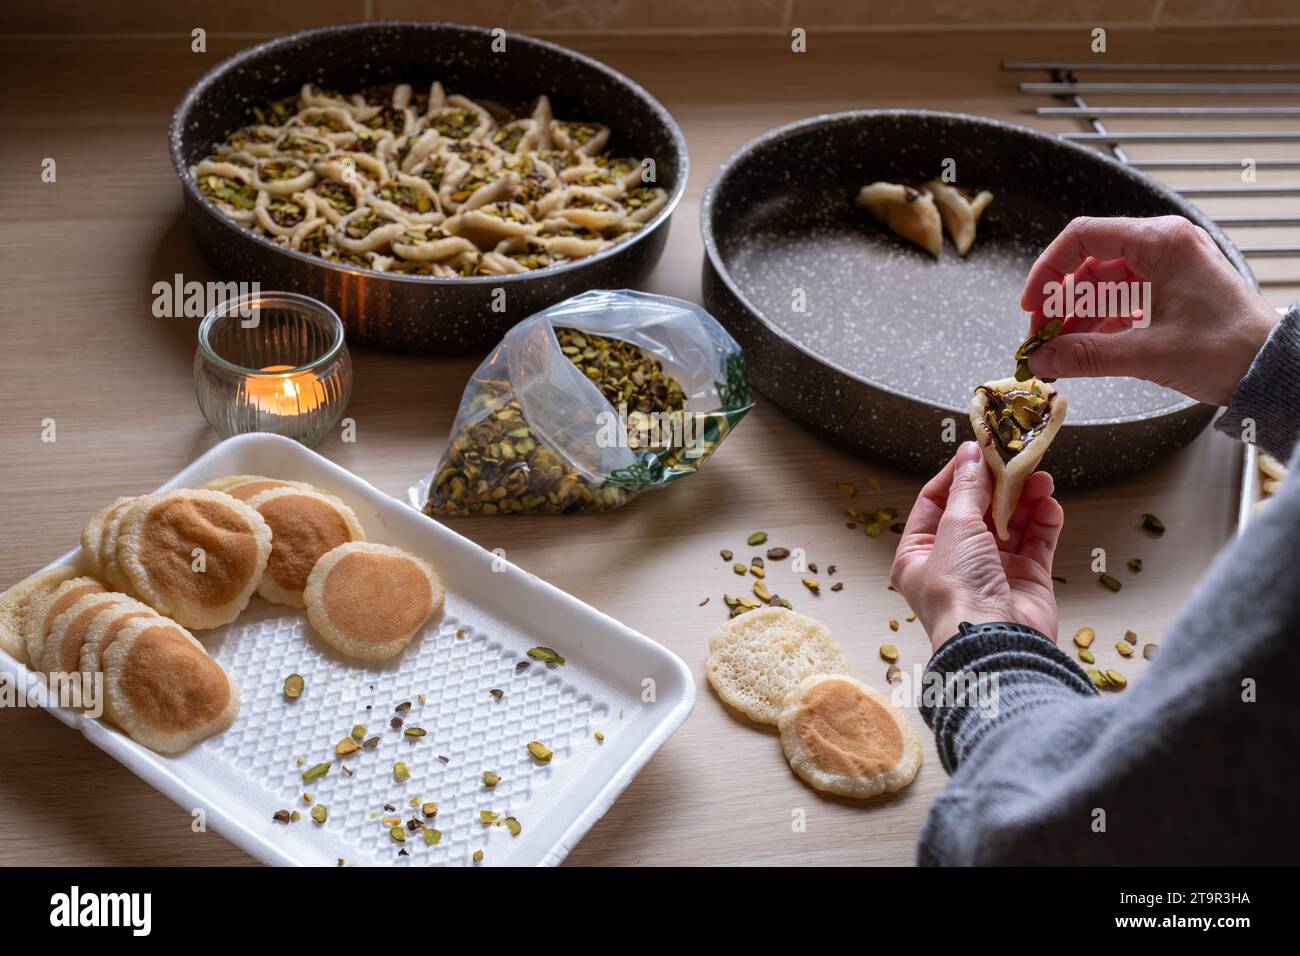 Hände halten Qatayef gefüllt mit Schokolade und mit Pistazien belegt auf einem Holztisch, mit einem Teller, der später im Ofen als Ramadan swe zubereitet wird Stockfoto